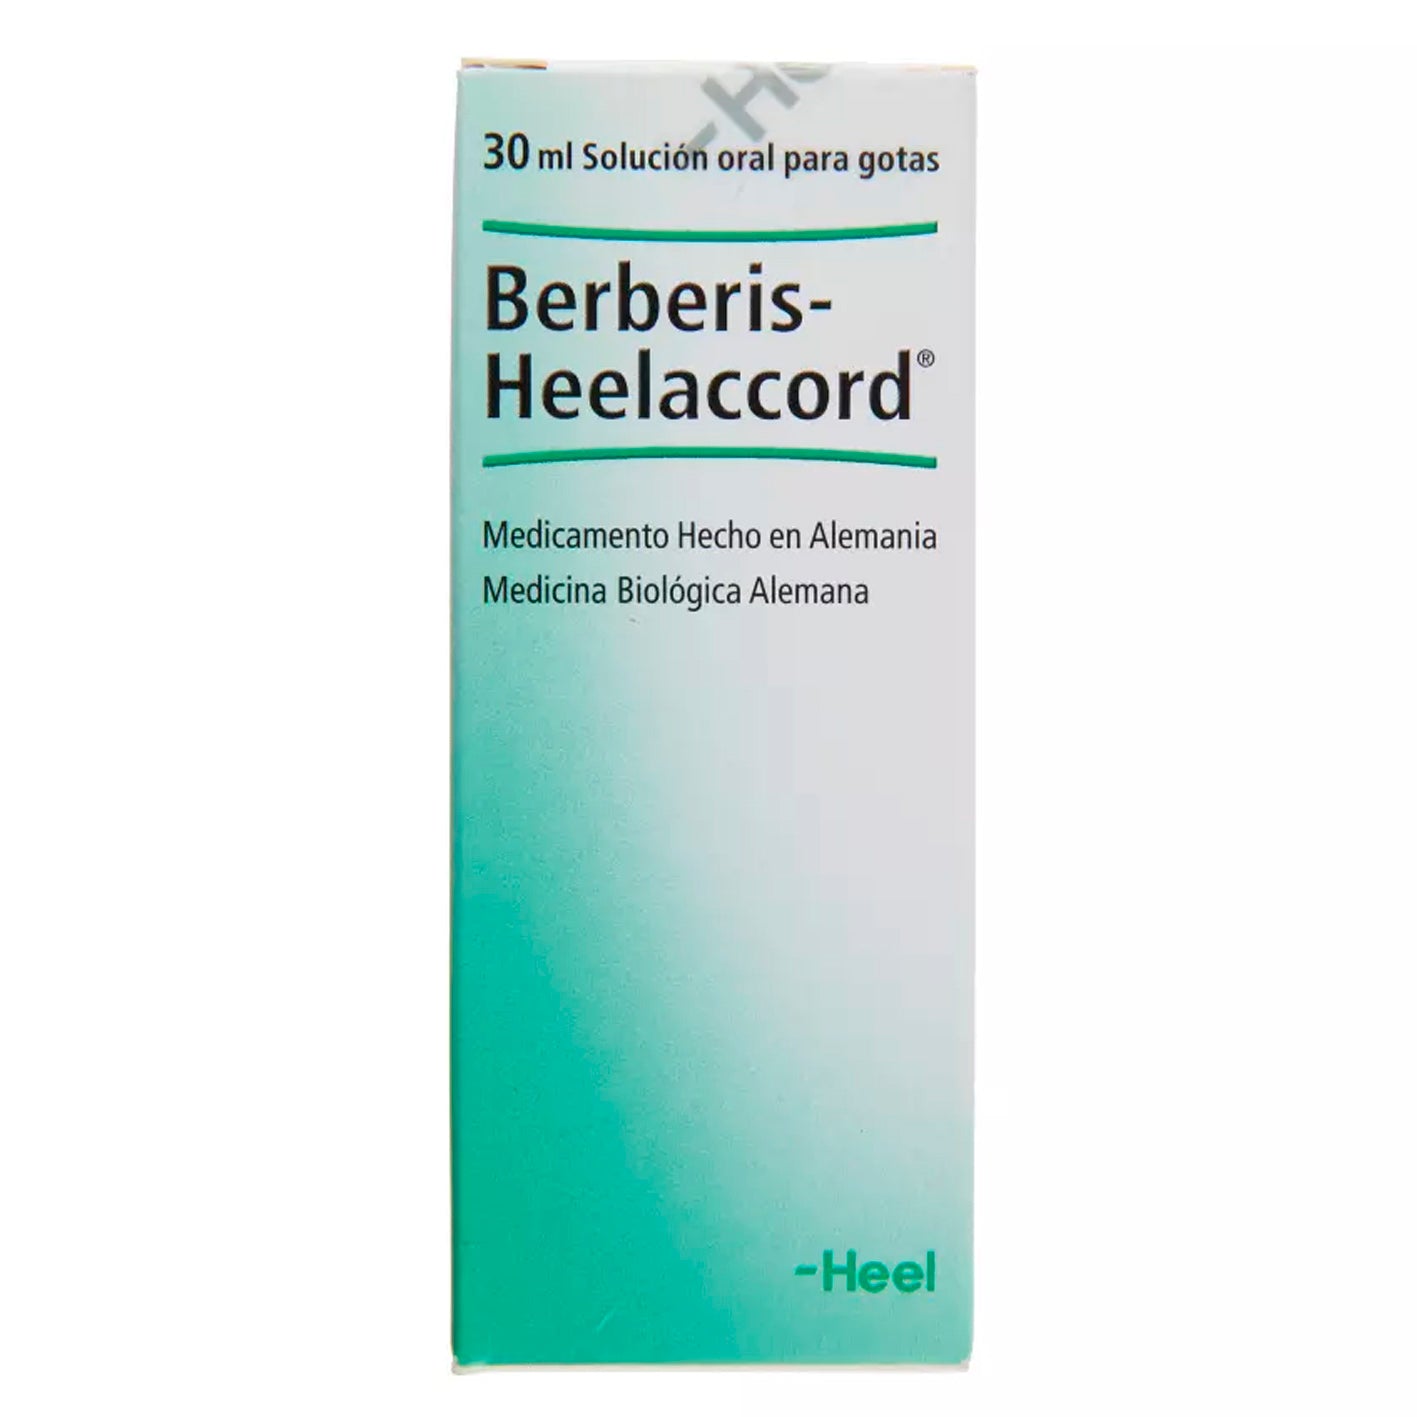 Berberis-Heelaccord Solución Oral para Gotas